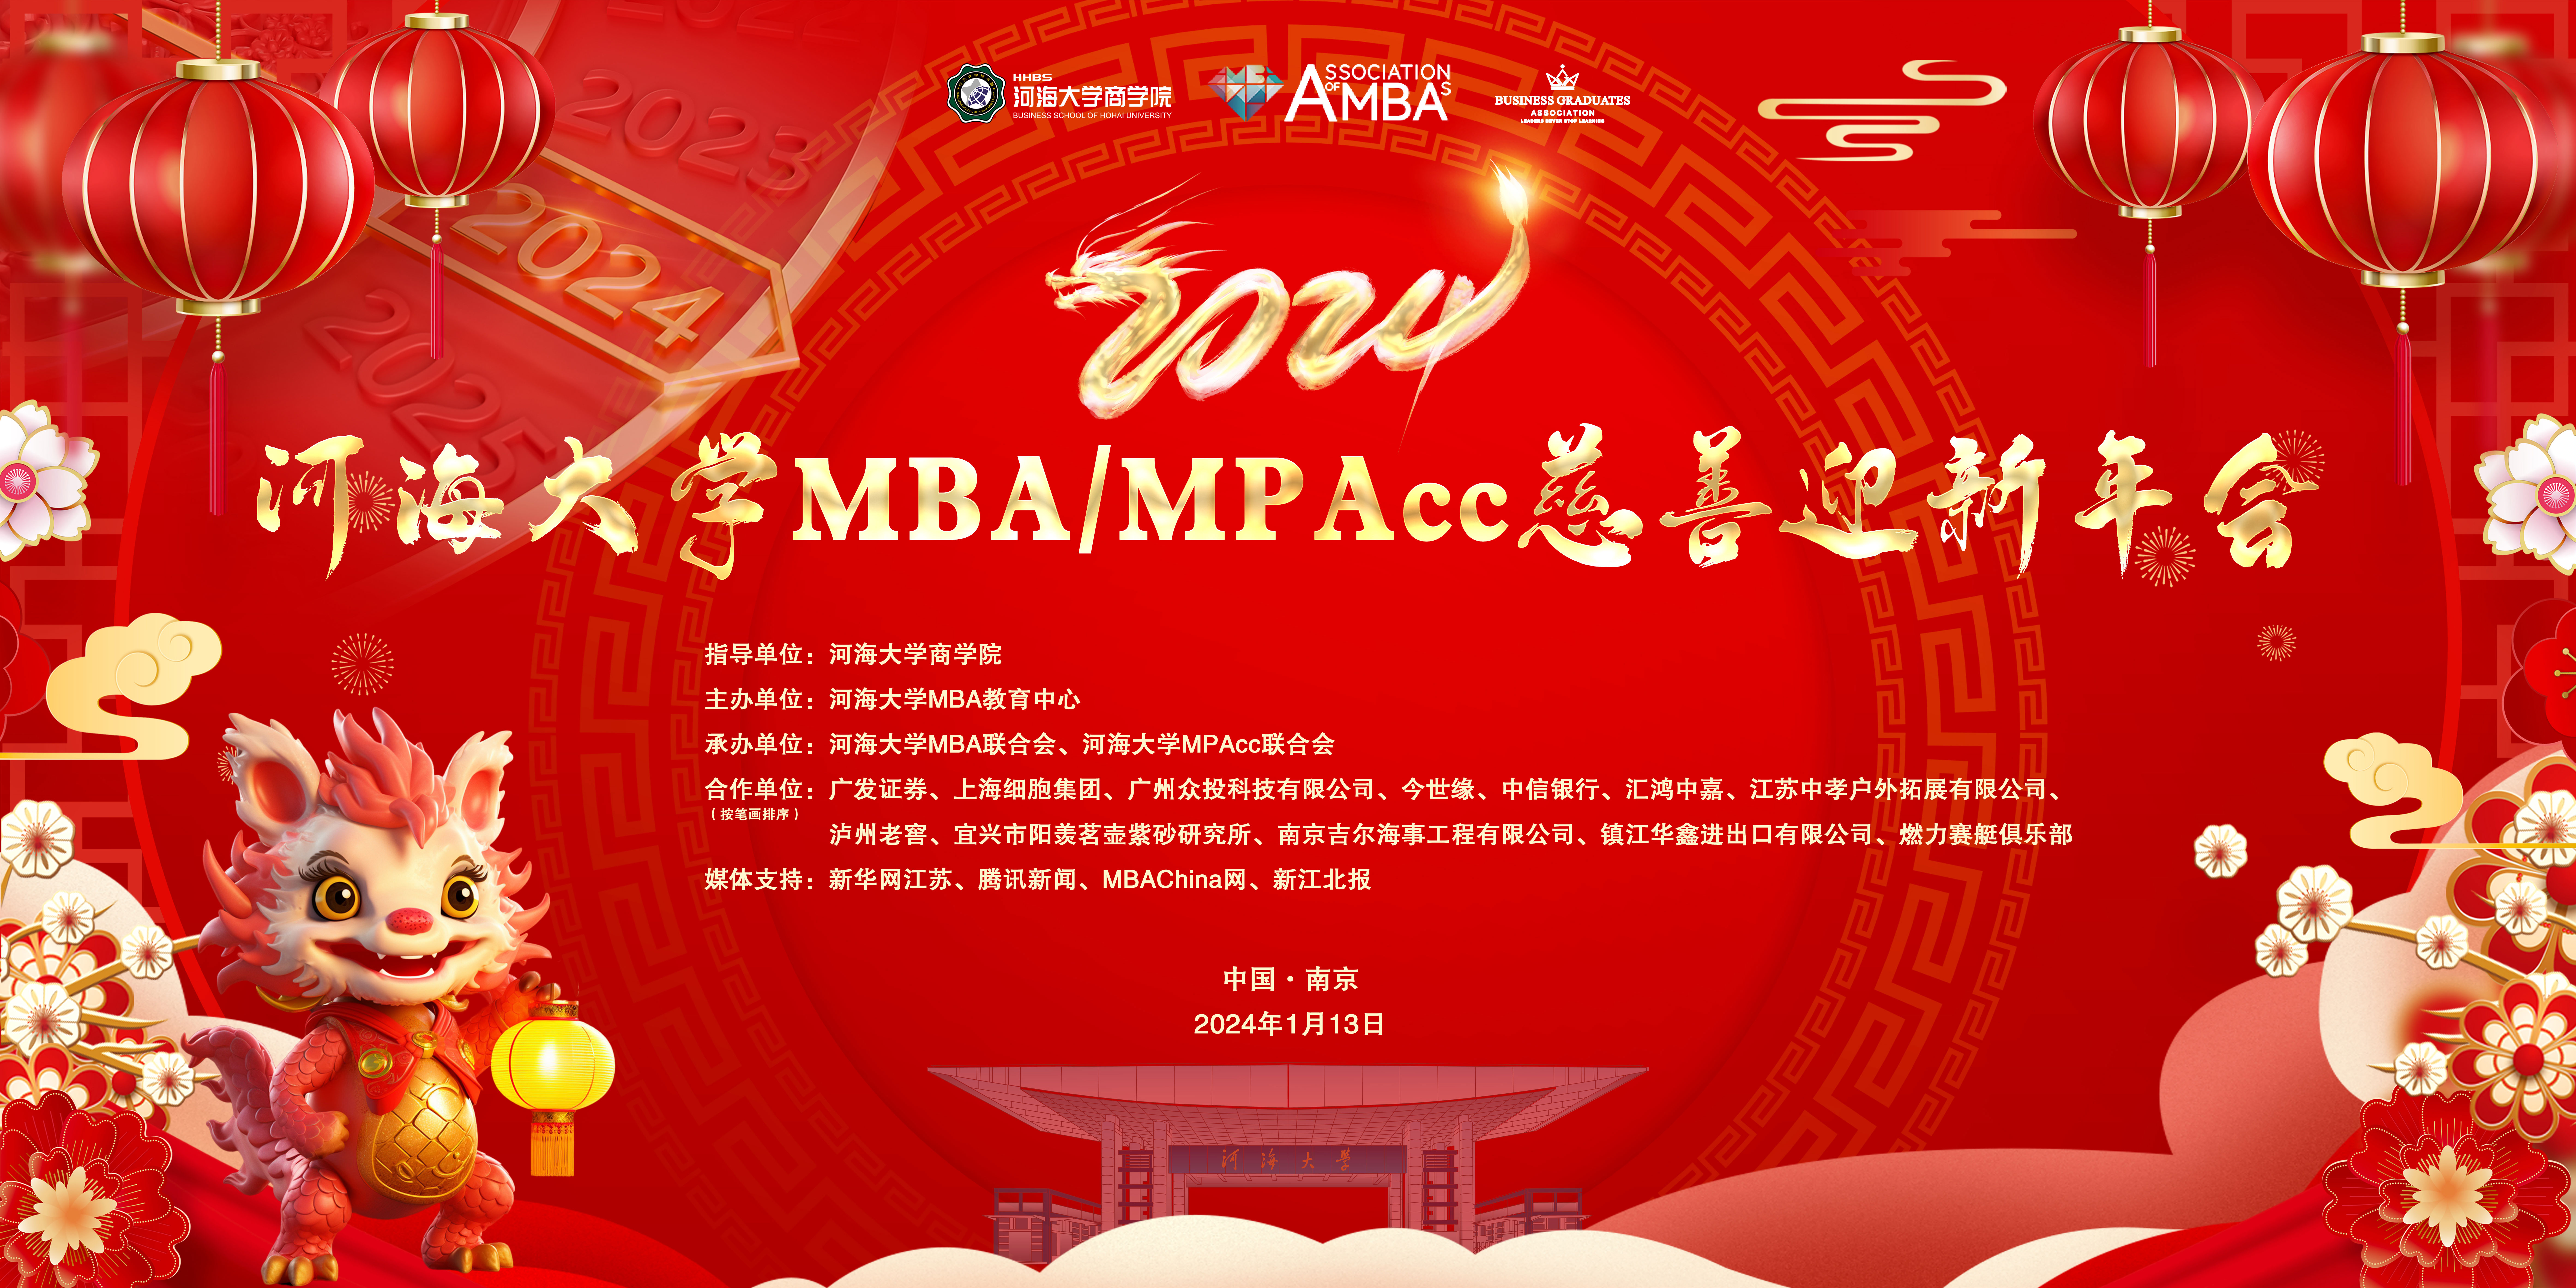 2024河海大学MBA/MPAcc慈善迎新年会成功举办